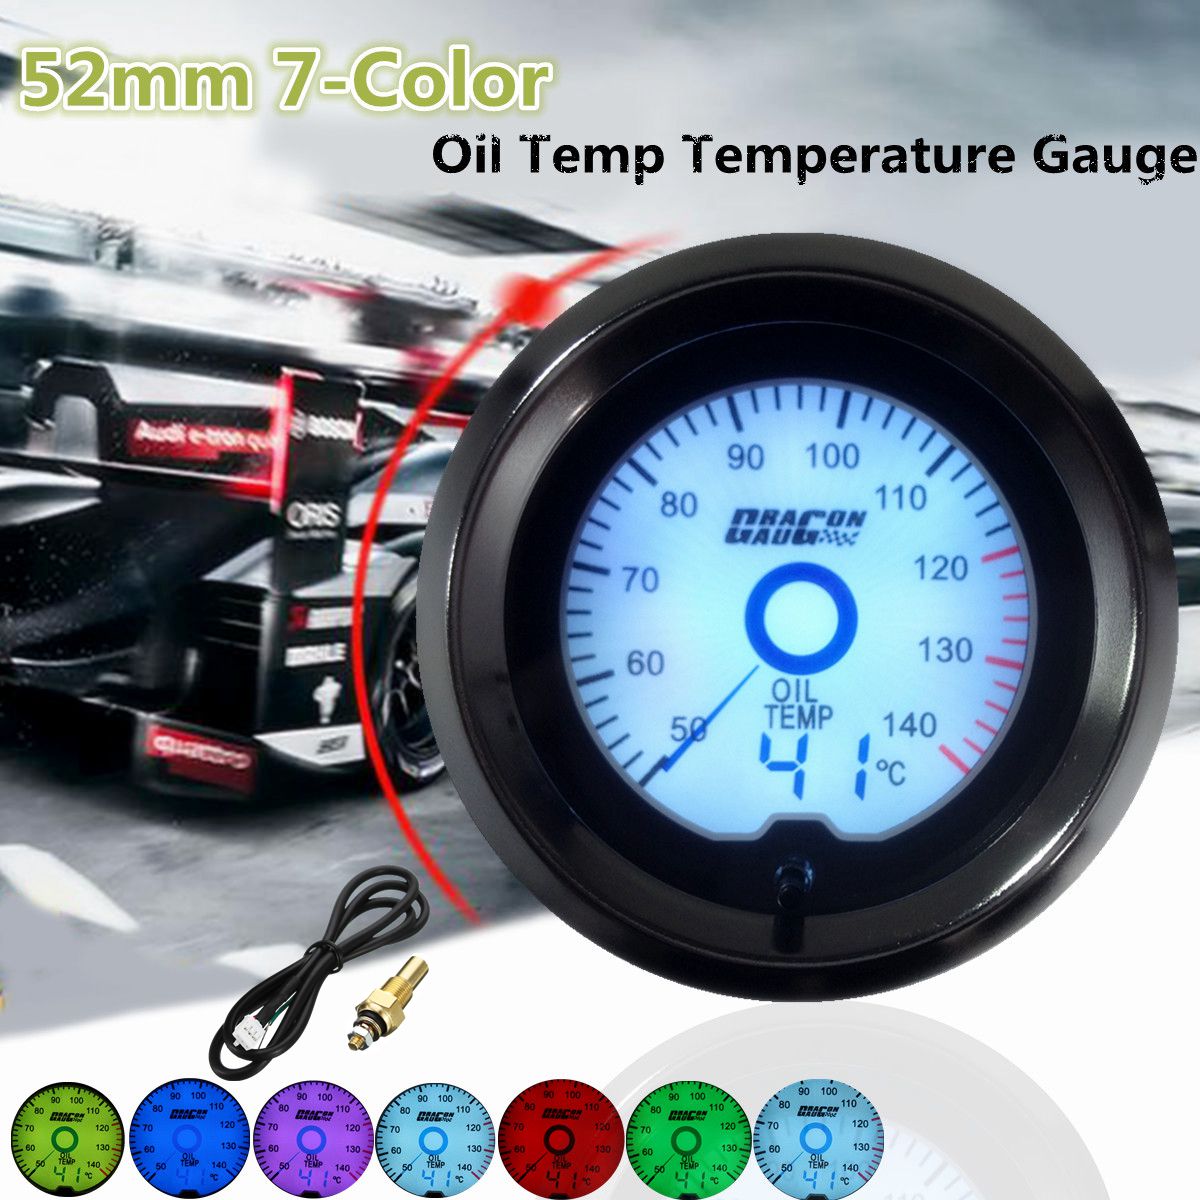 52mm-Car-Oil-Temp-Temperature-Gauge-Digital-7-color-LED-Display-Car-Meter-1225212